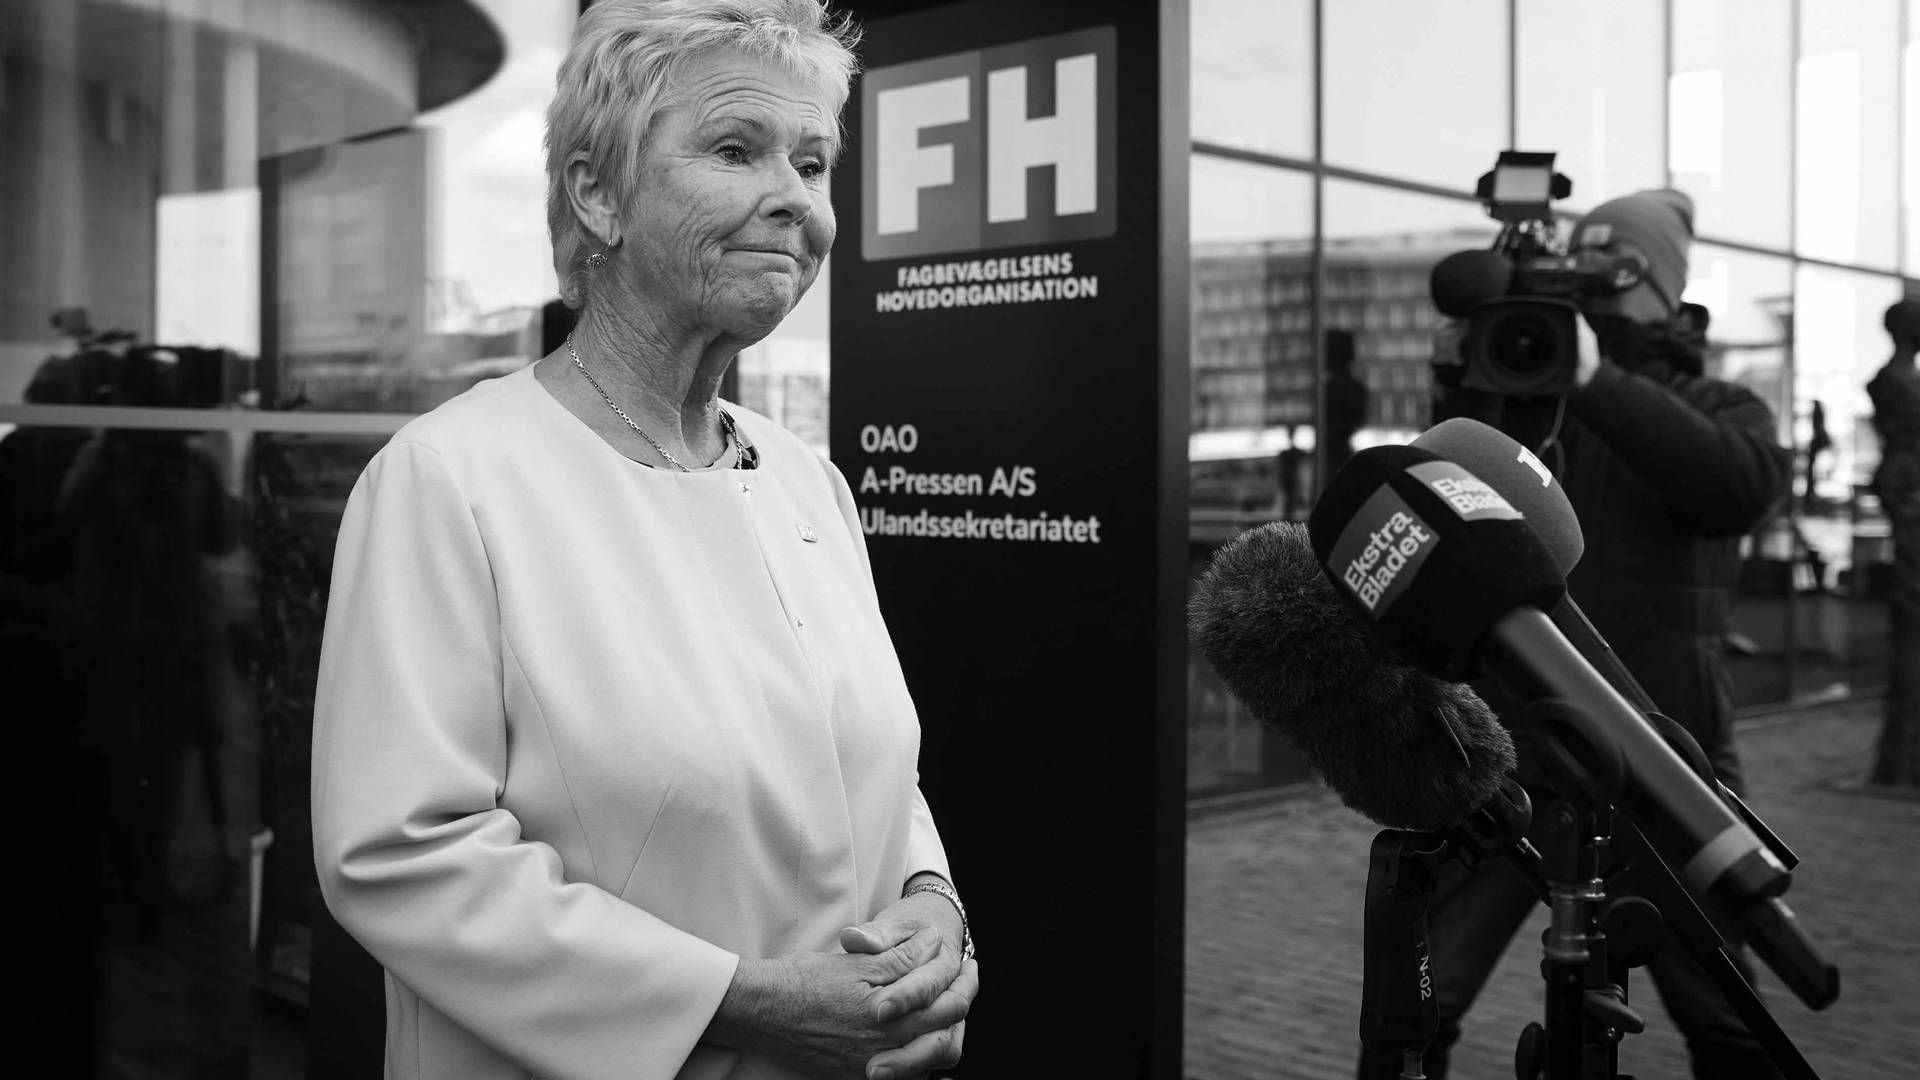 Advokatundersøgelse fra Kromann Reumert vurderer, at Lizette Risgaard ved tre episoder har udvist upassende adfærd. | Foto: Jens Dresling